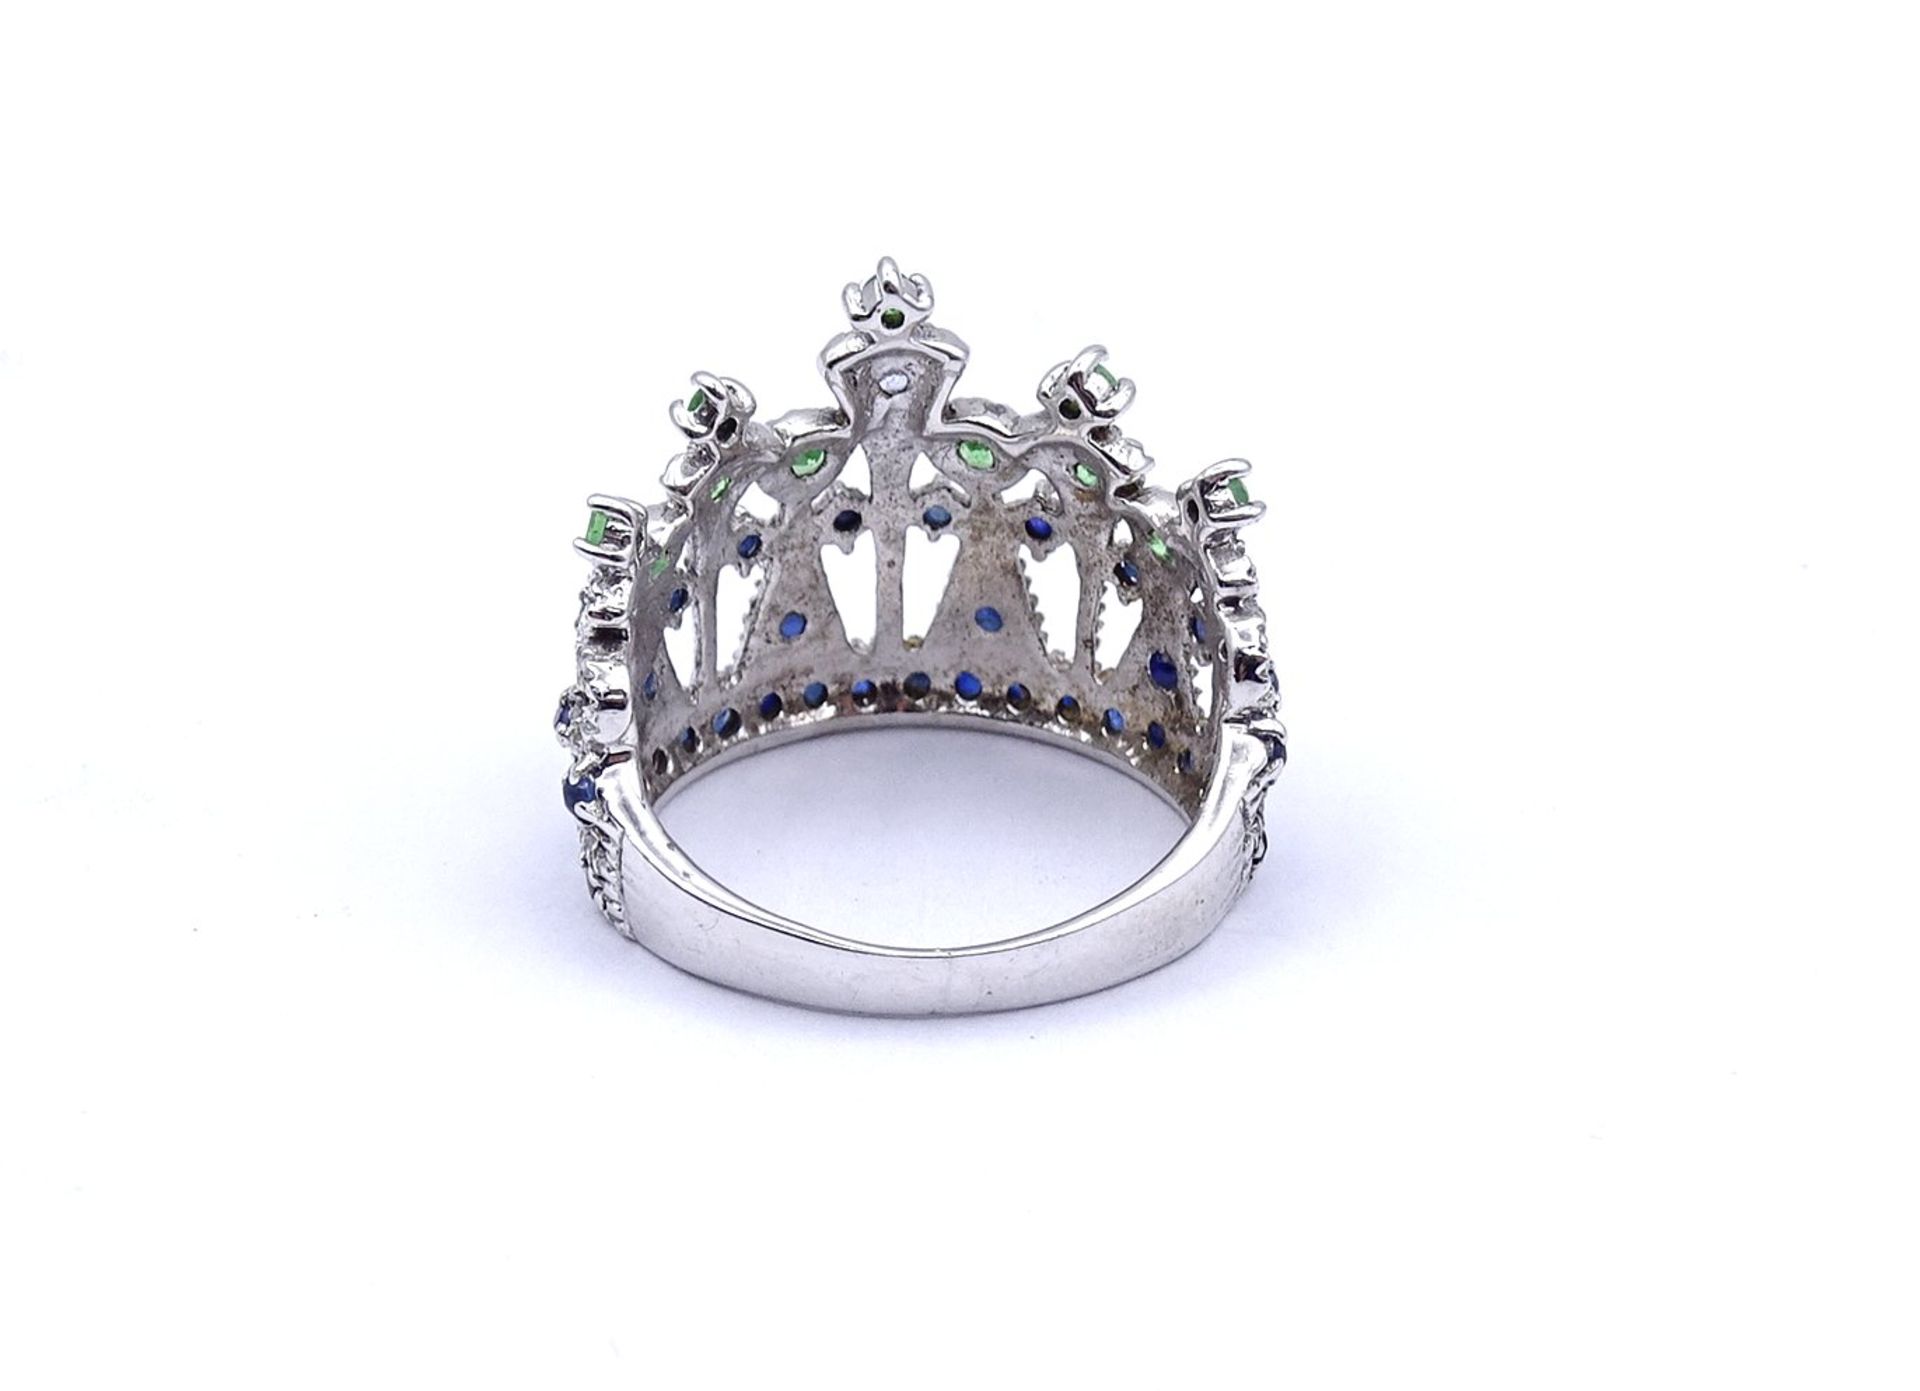 Silberring in Form einer Krone, mit Farbsteinen, 4,8g., RG 58 - Image 4 of 4